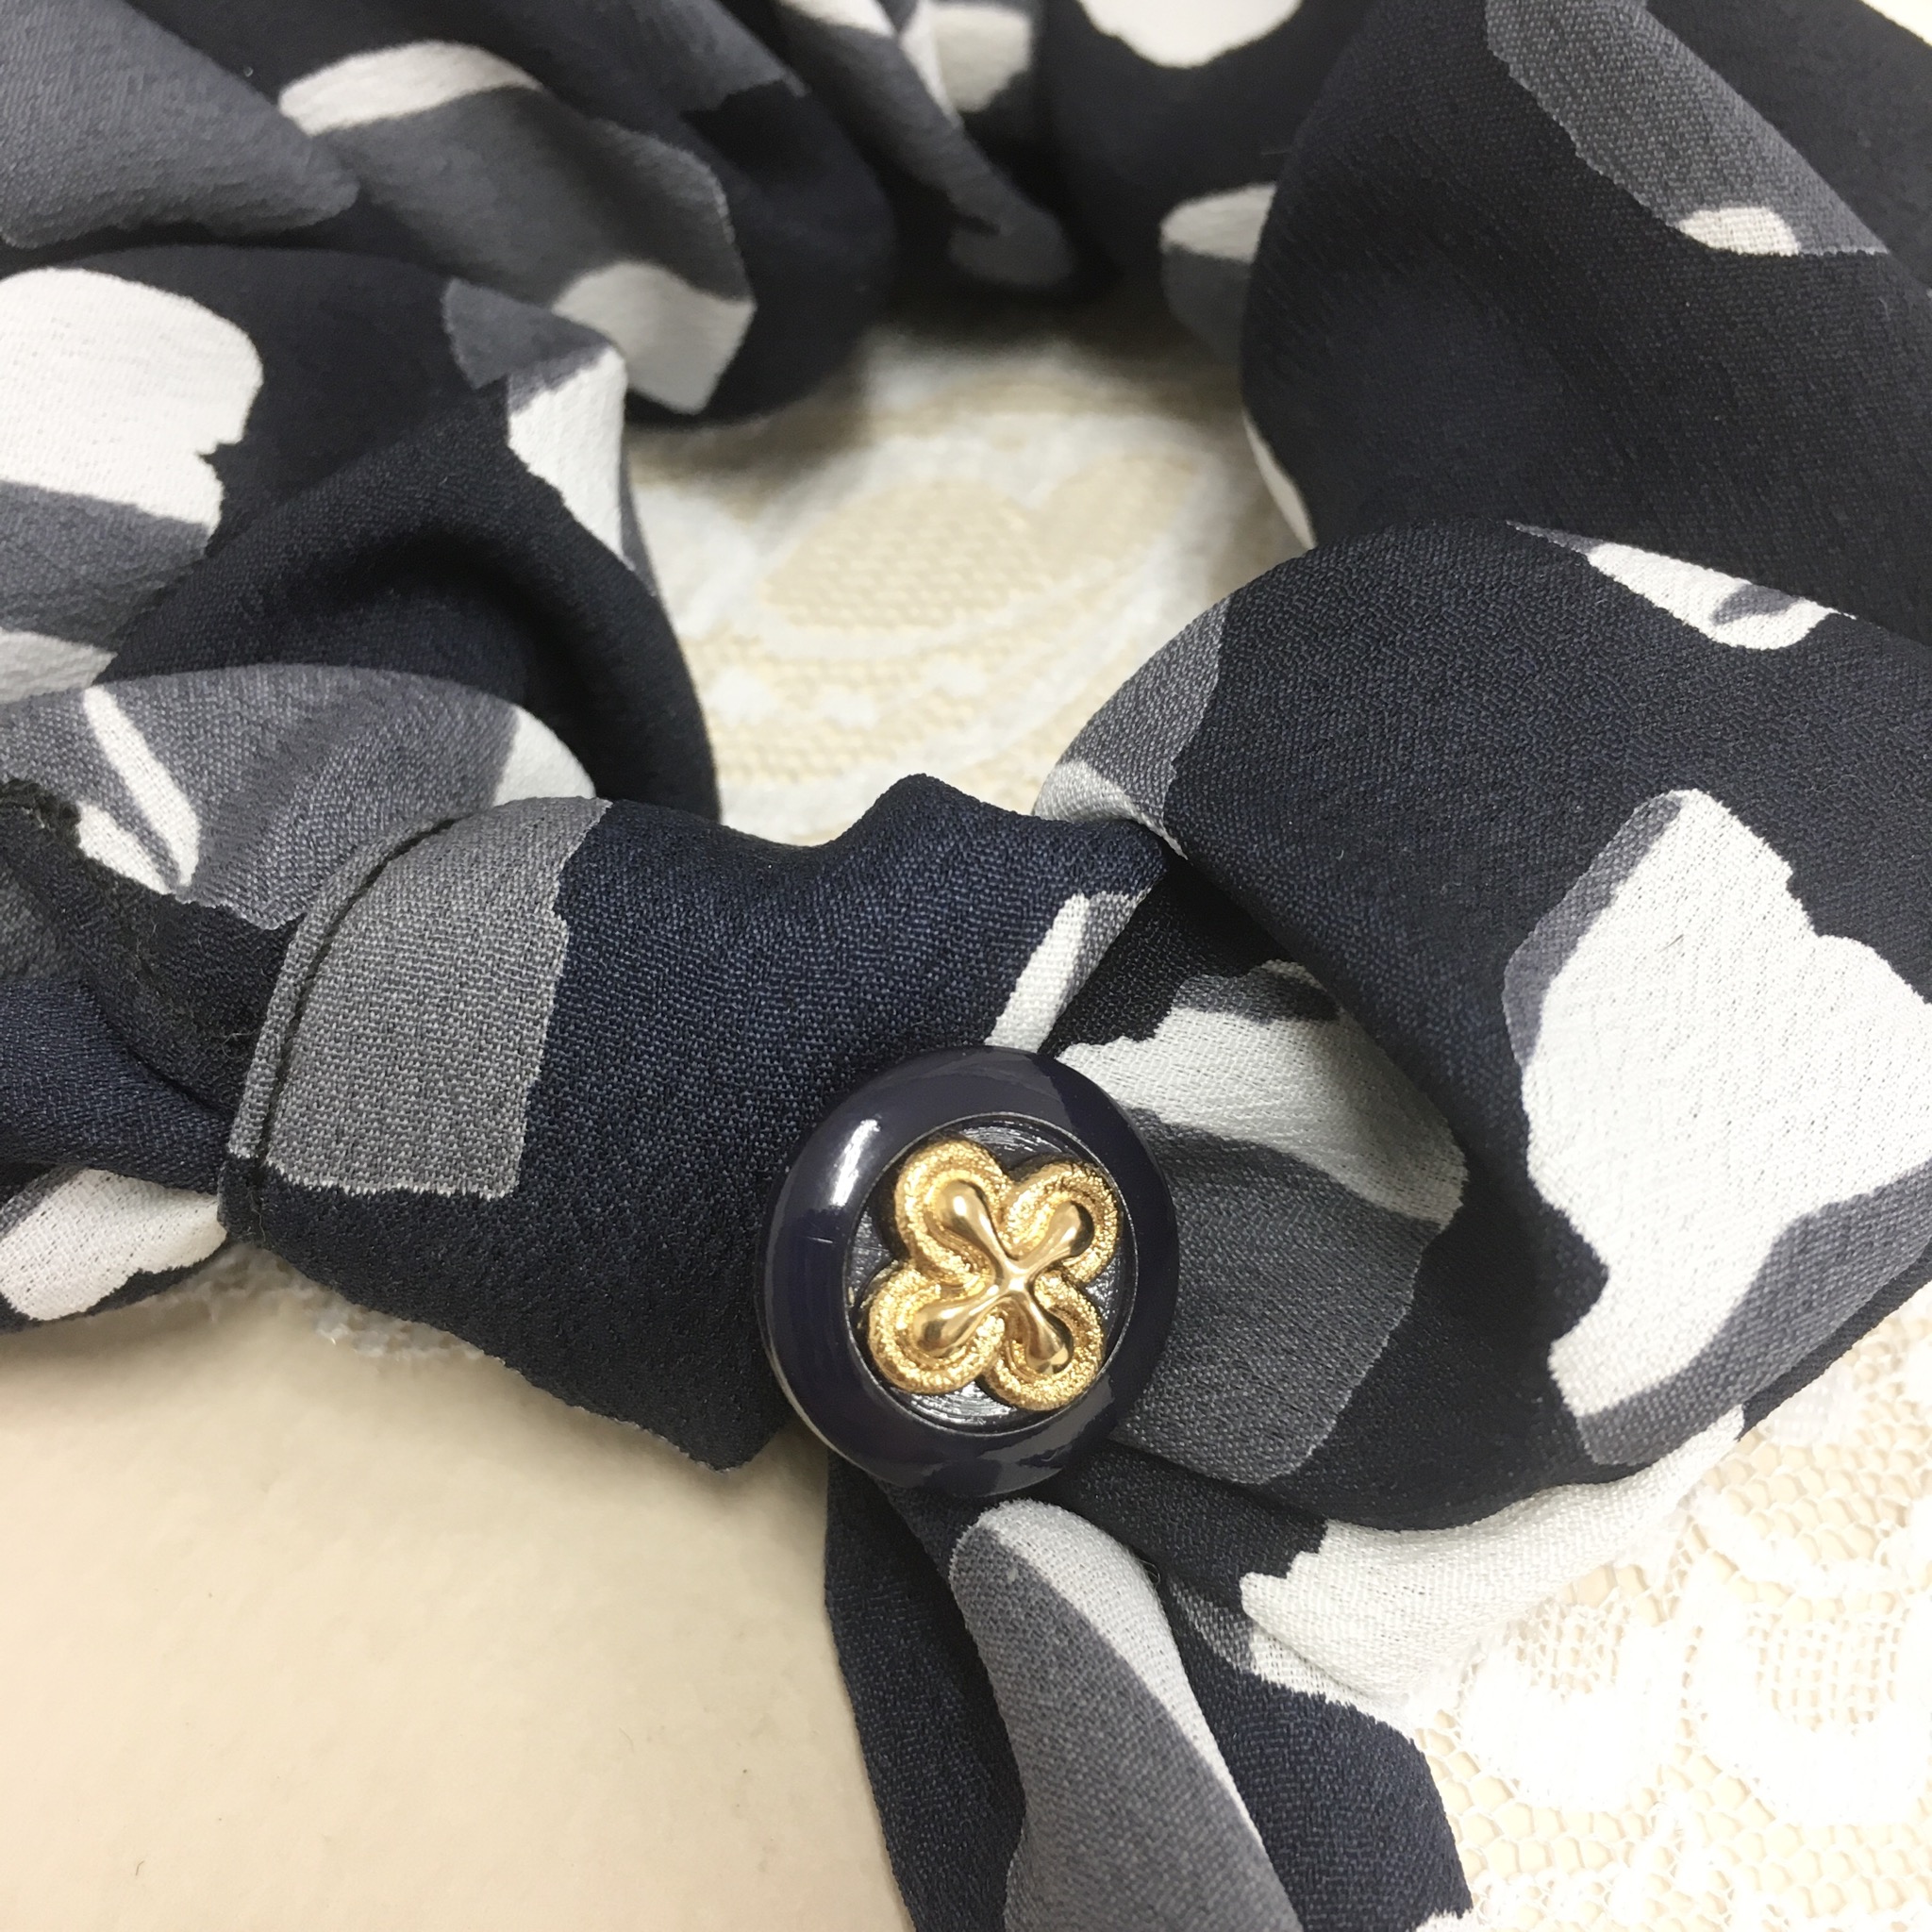 リボンが可愛い 柄スカーフ素材リボンの金ボタン付きシュシュ ネイビー Iichi ハンドメイド クラフト作品 手仕事品の通販